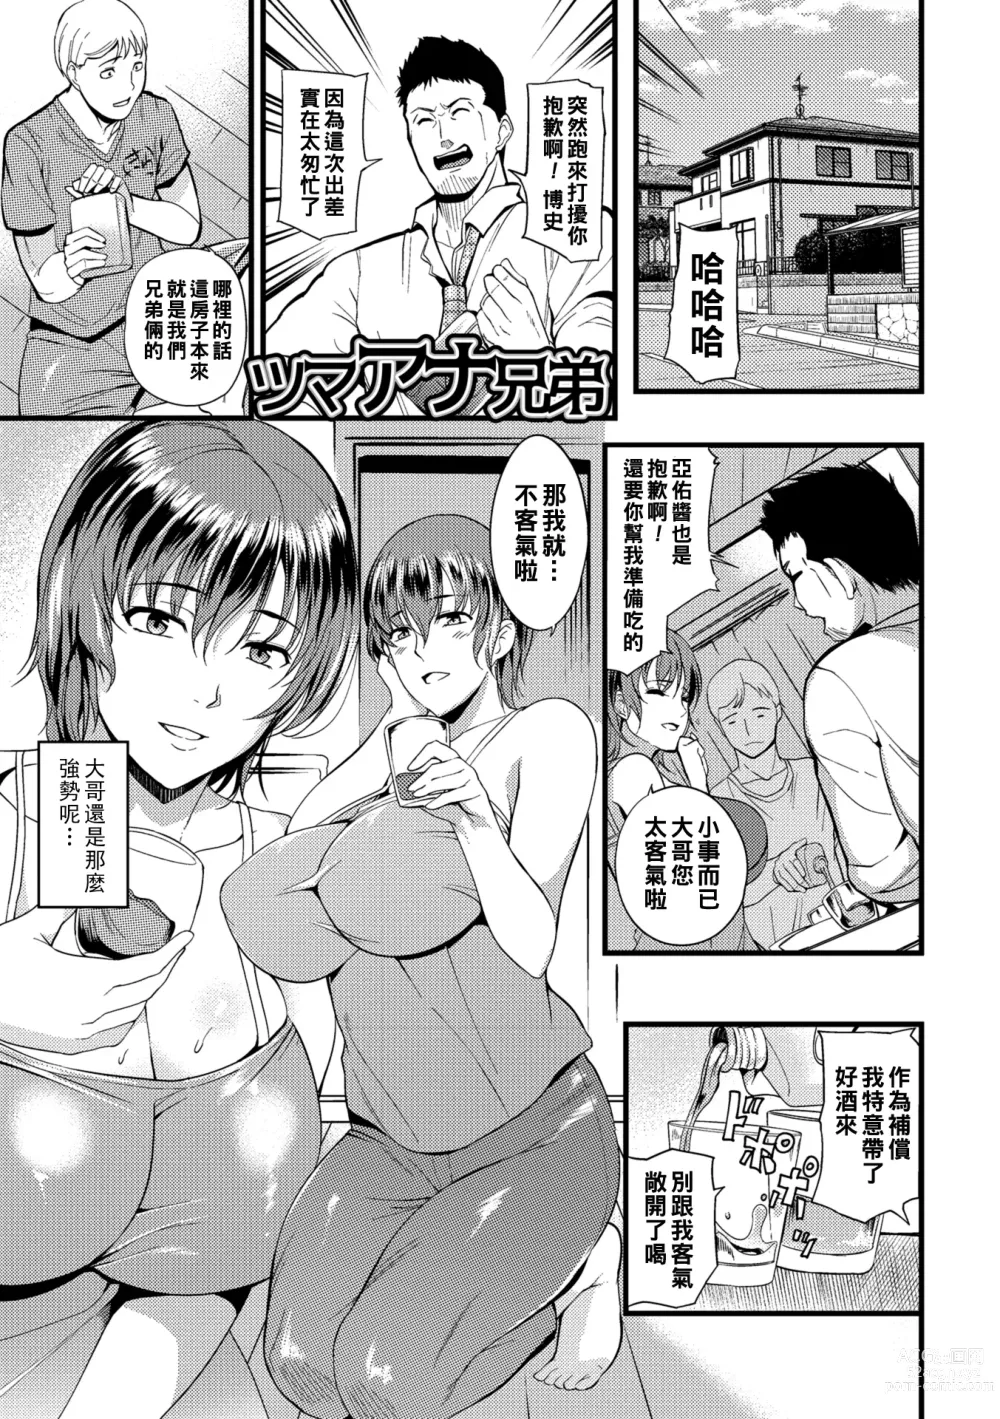 Page 179 of manga Oku-san ga Shiranai Kairaku